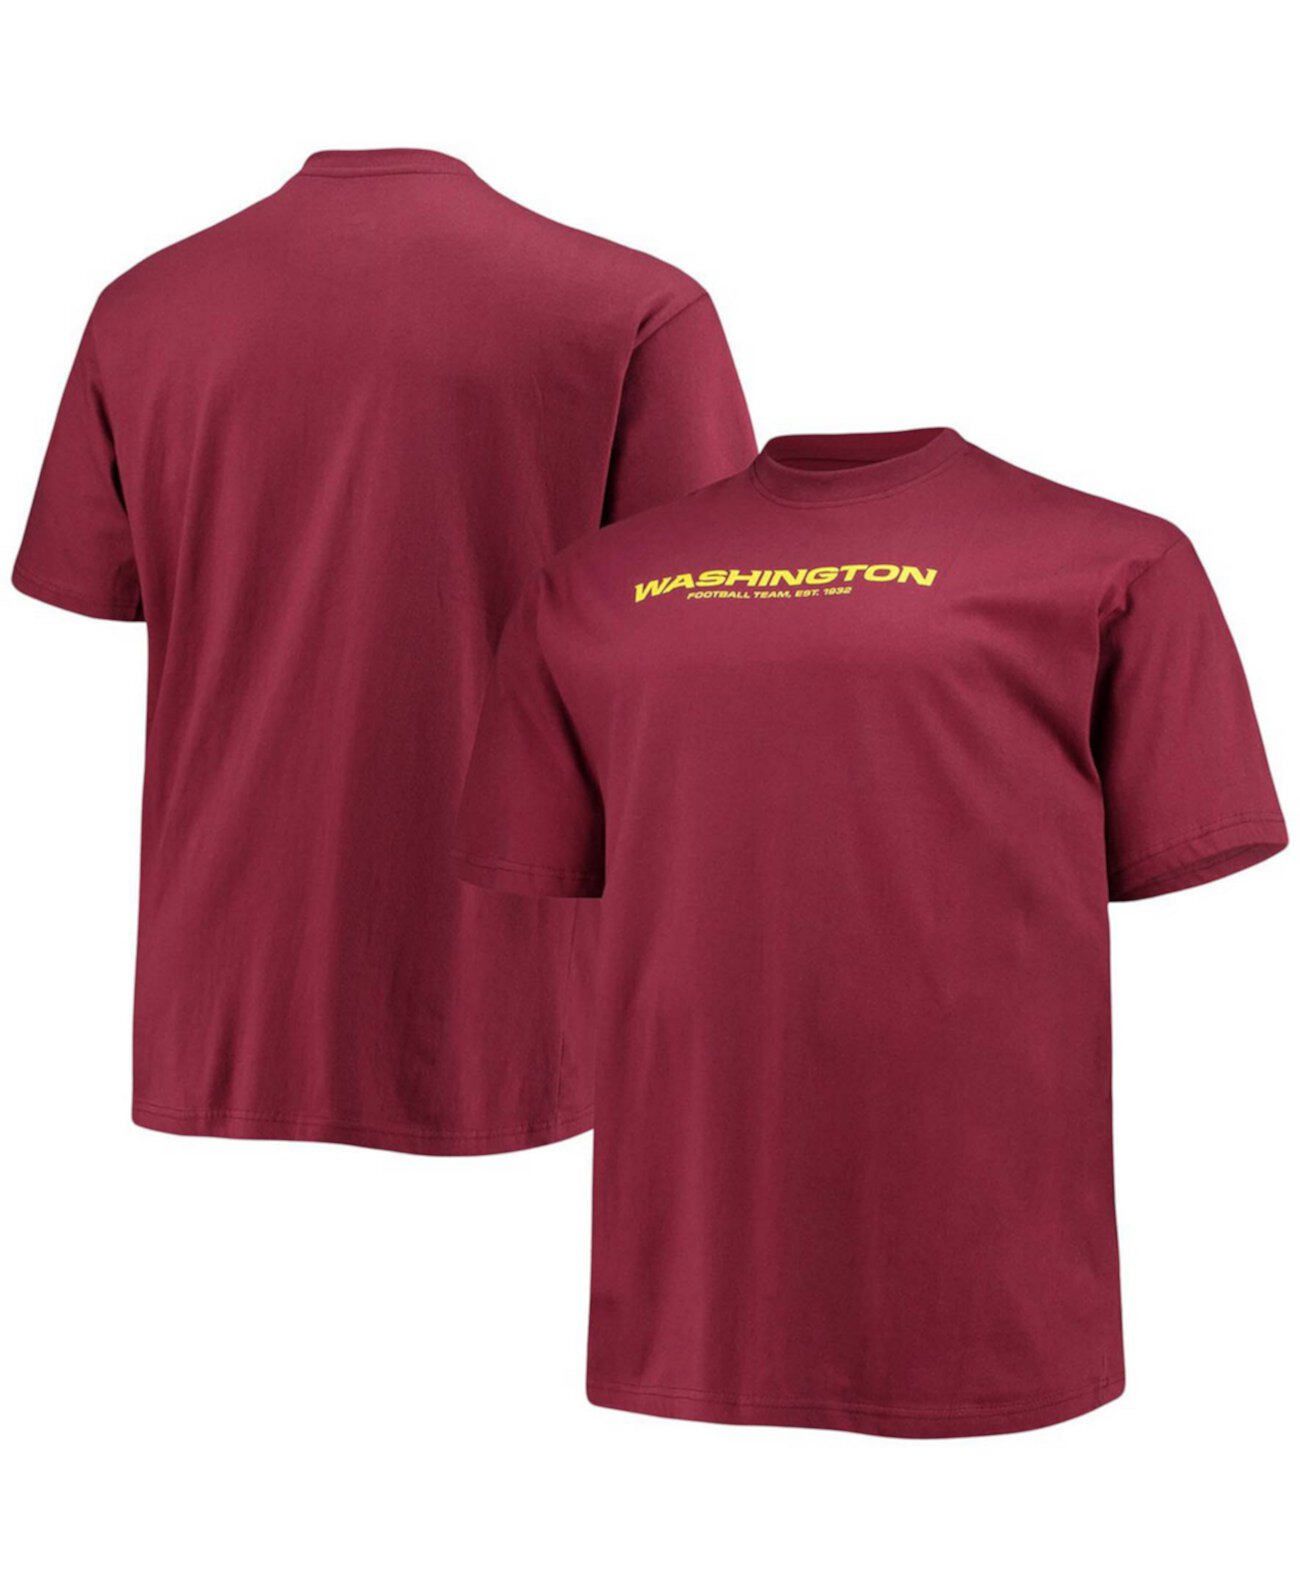 Бордовая мужская футболка с логотипом футбольной команды Вашингтона Big and Tall Profile